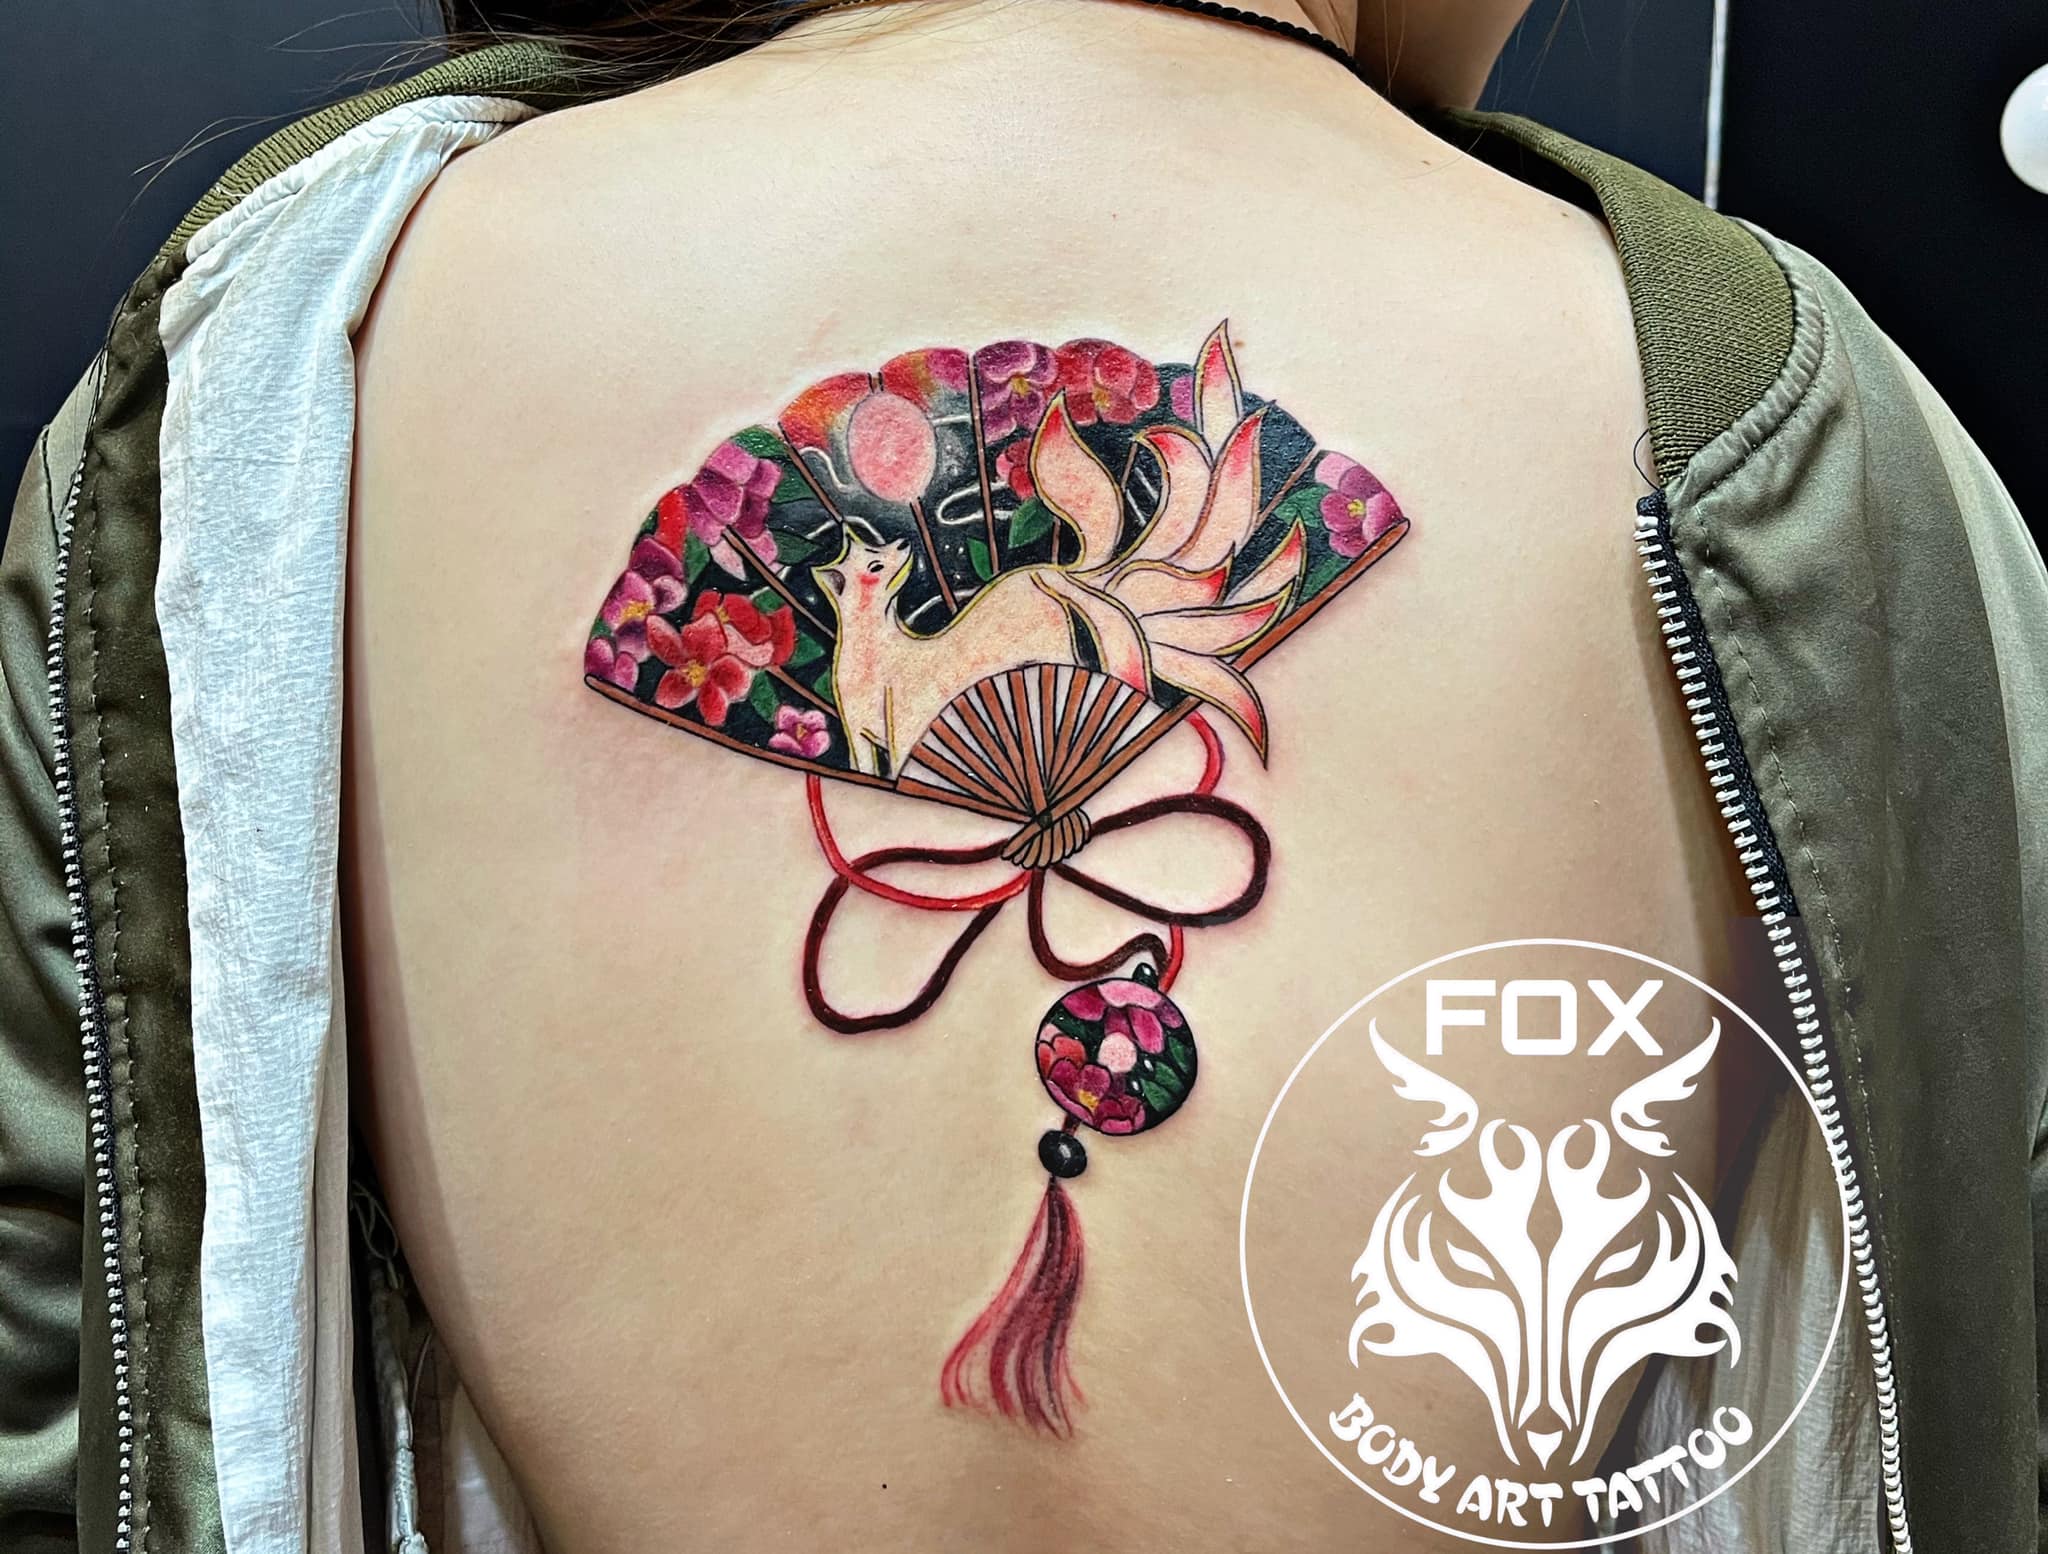 Fox Body Art Tattoo ảnh 2